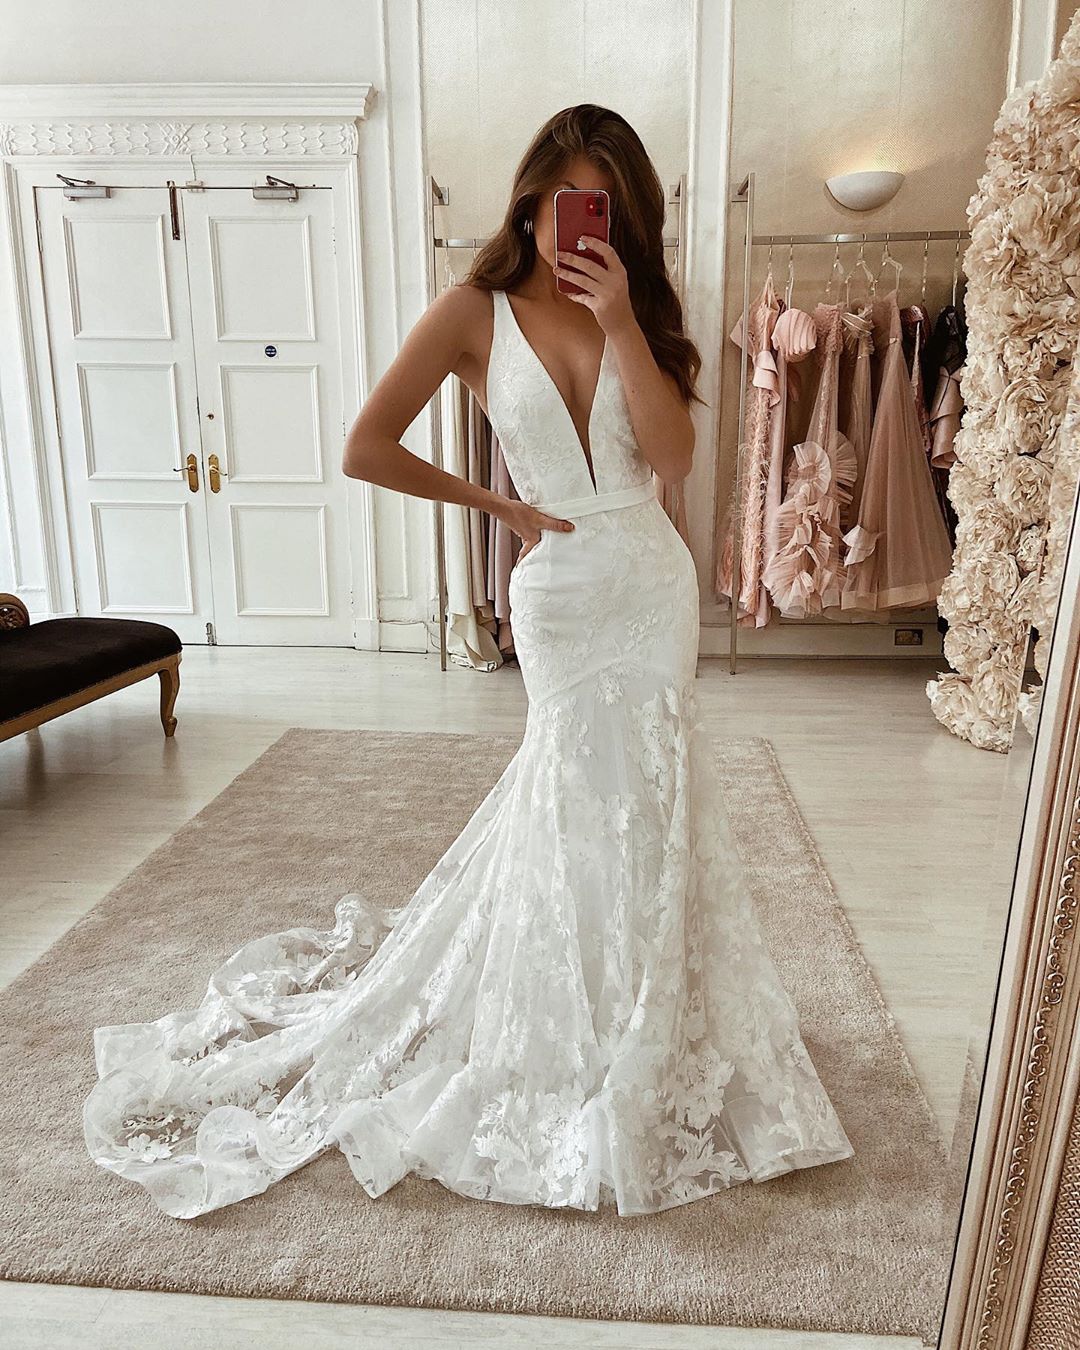 Kaufen Sie Elegante Hochzeitskleider V Ausschnitt bei babyonlinedress.de. Brautmoden Spitze Online mit günstigen preis bekommen.